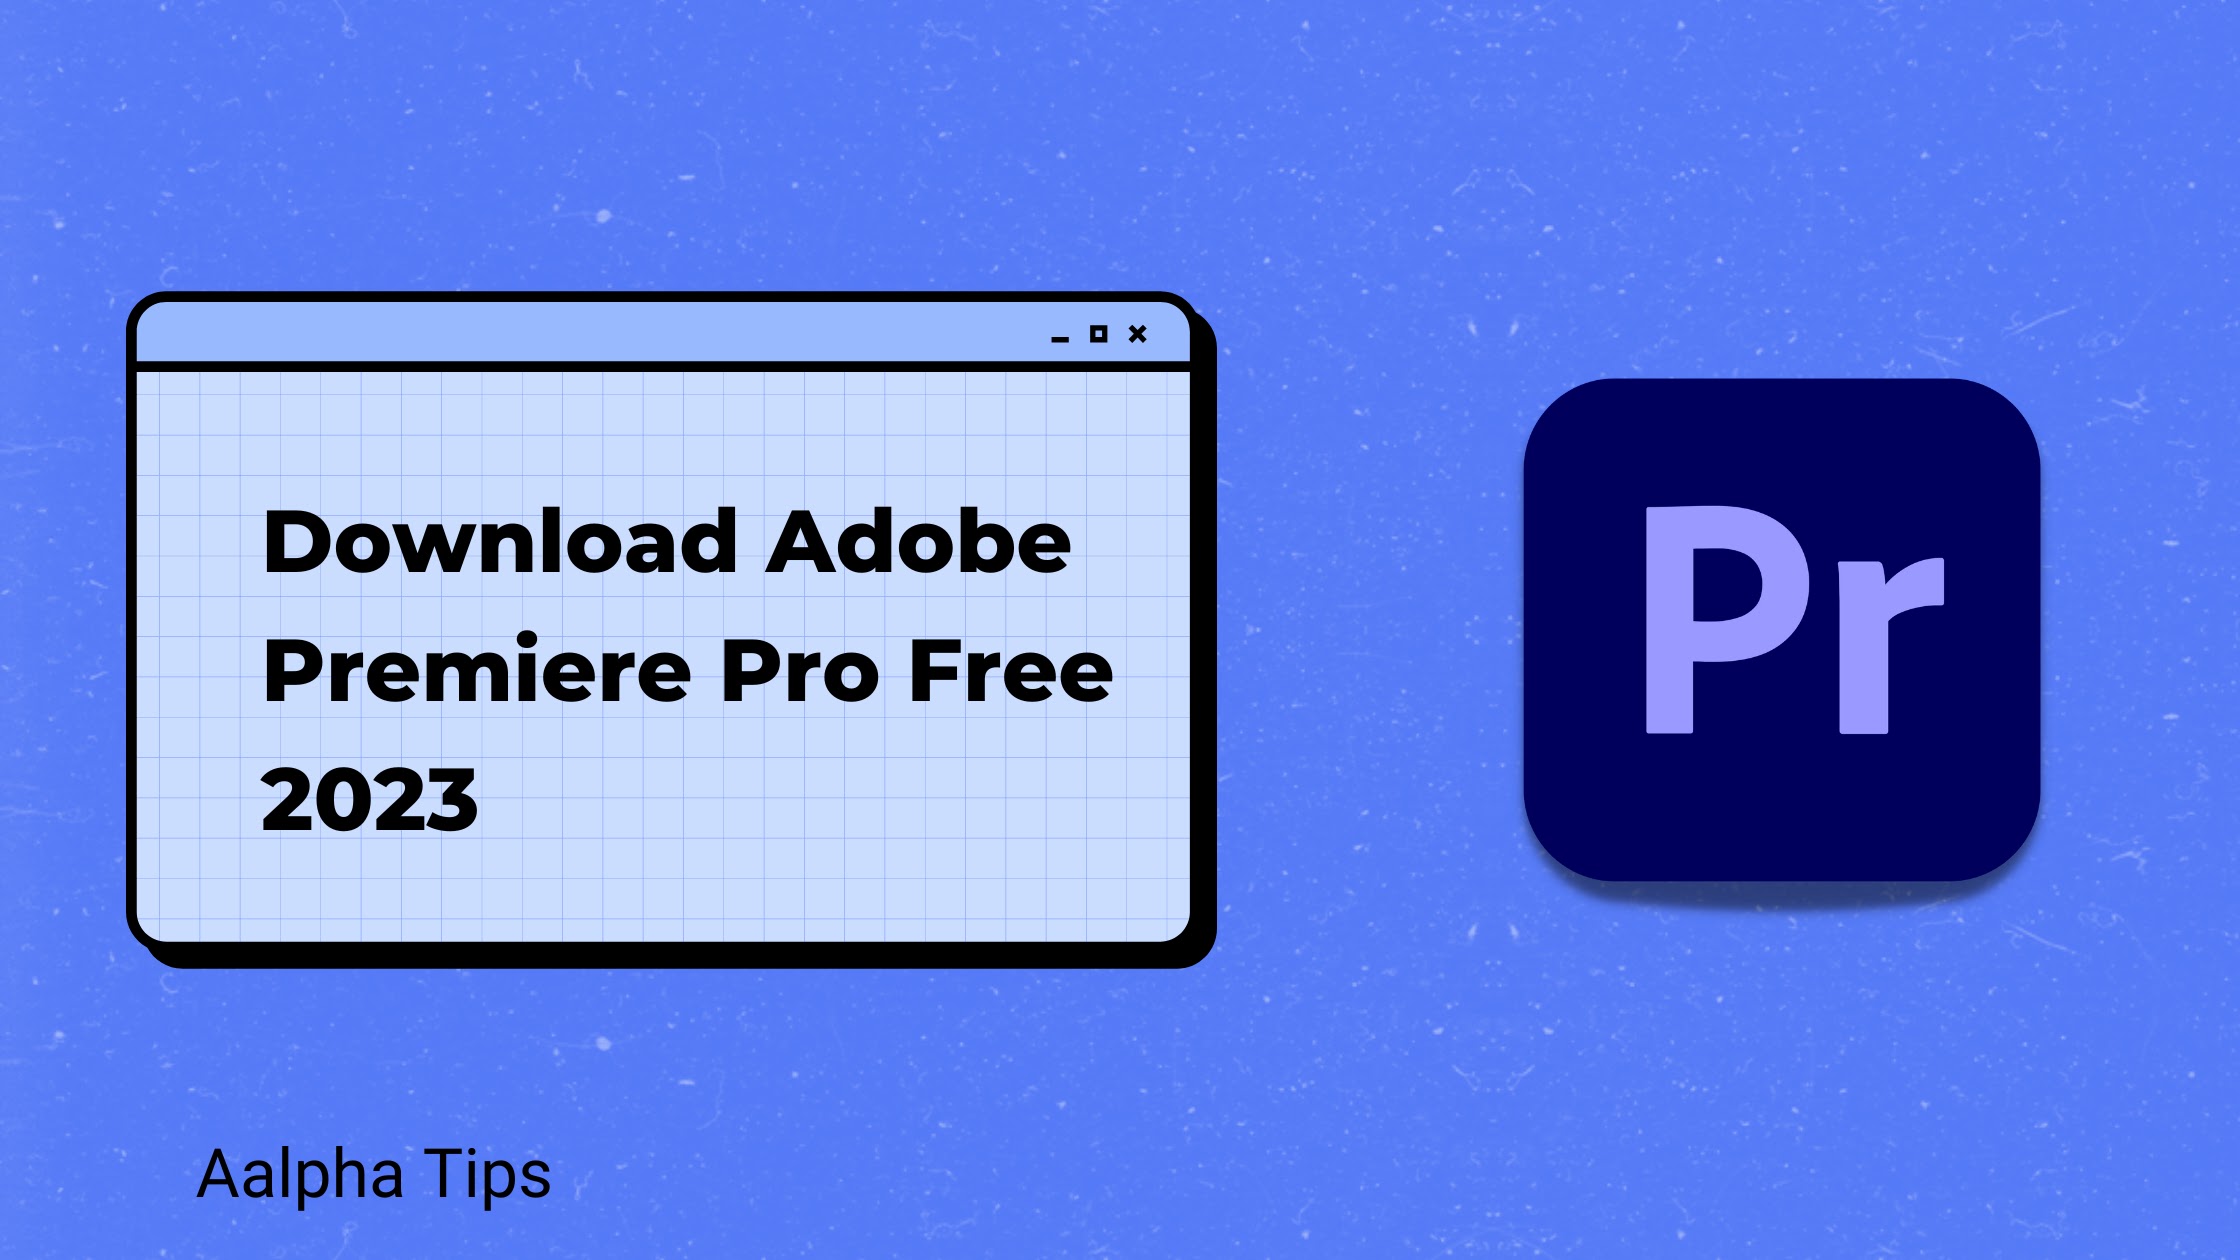 Download Adobe Premiere Pro Free 2023